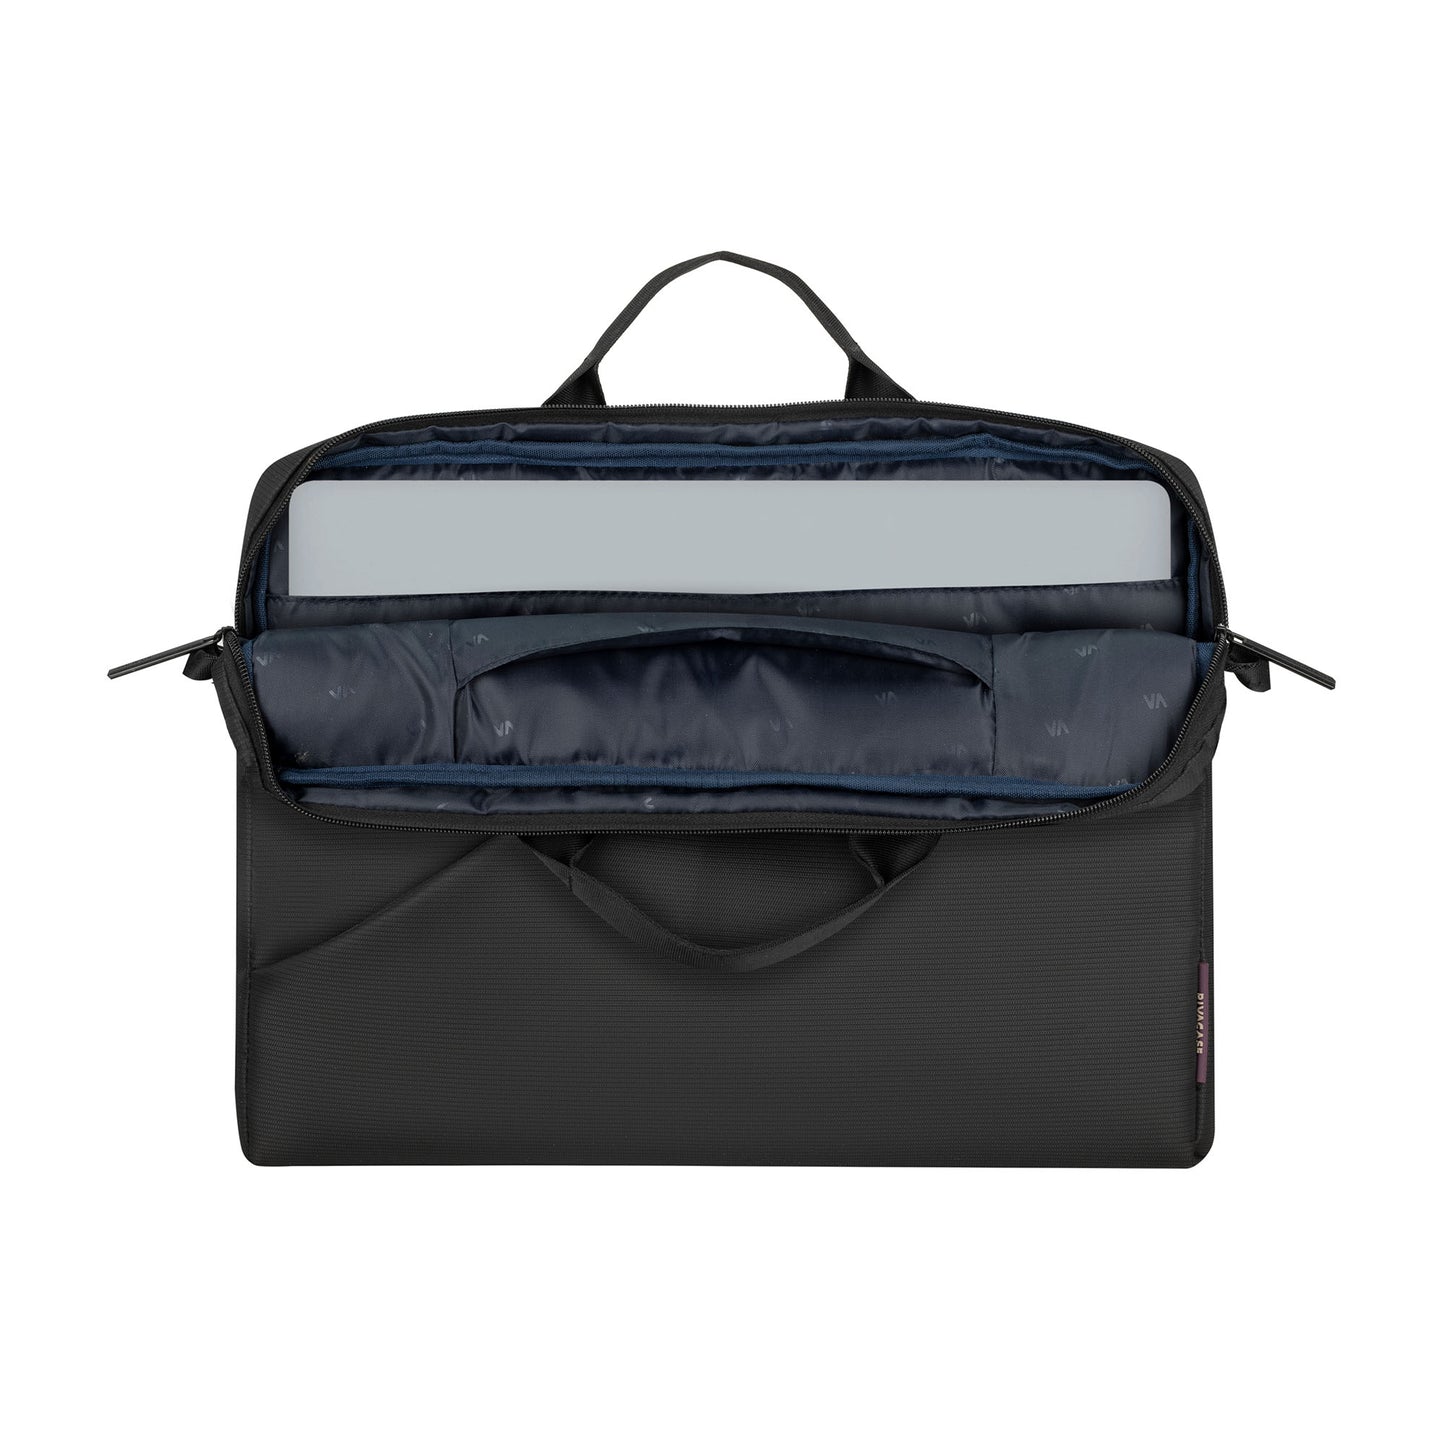 RIVACASE 8730 Laptop Bag 16/15 - Gray/Black